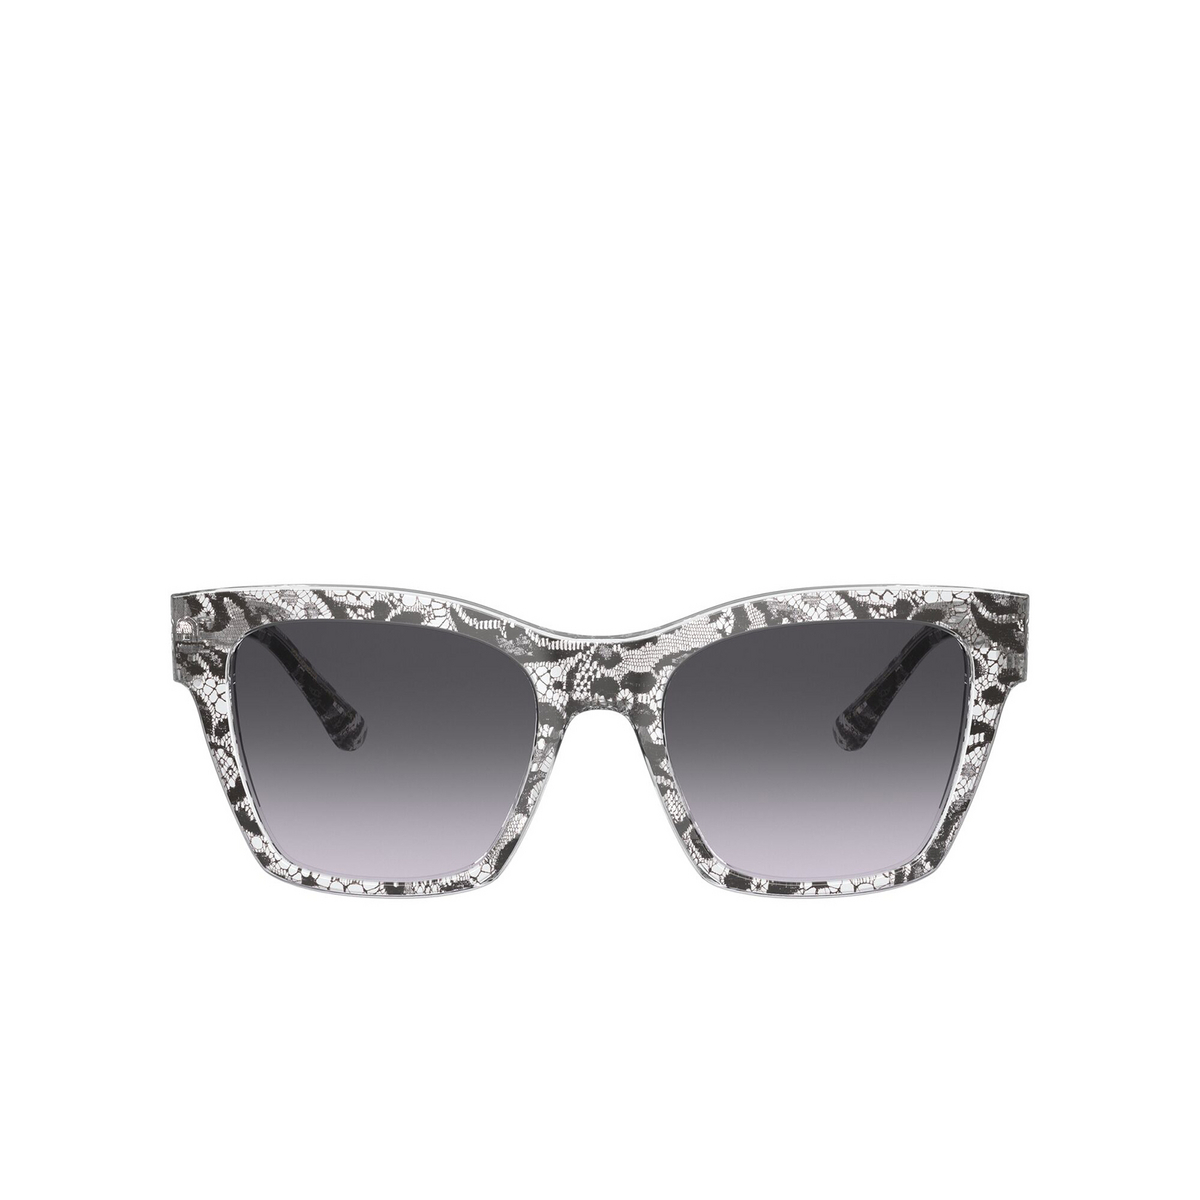 Dolce & Gabbana DG4384 Sunglasses 32878G Black Lace - front view